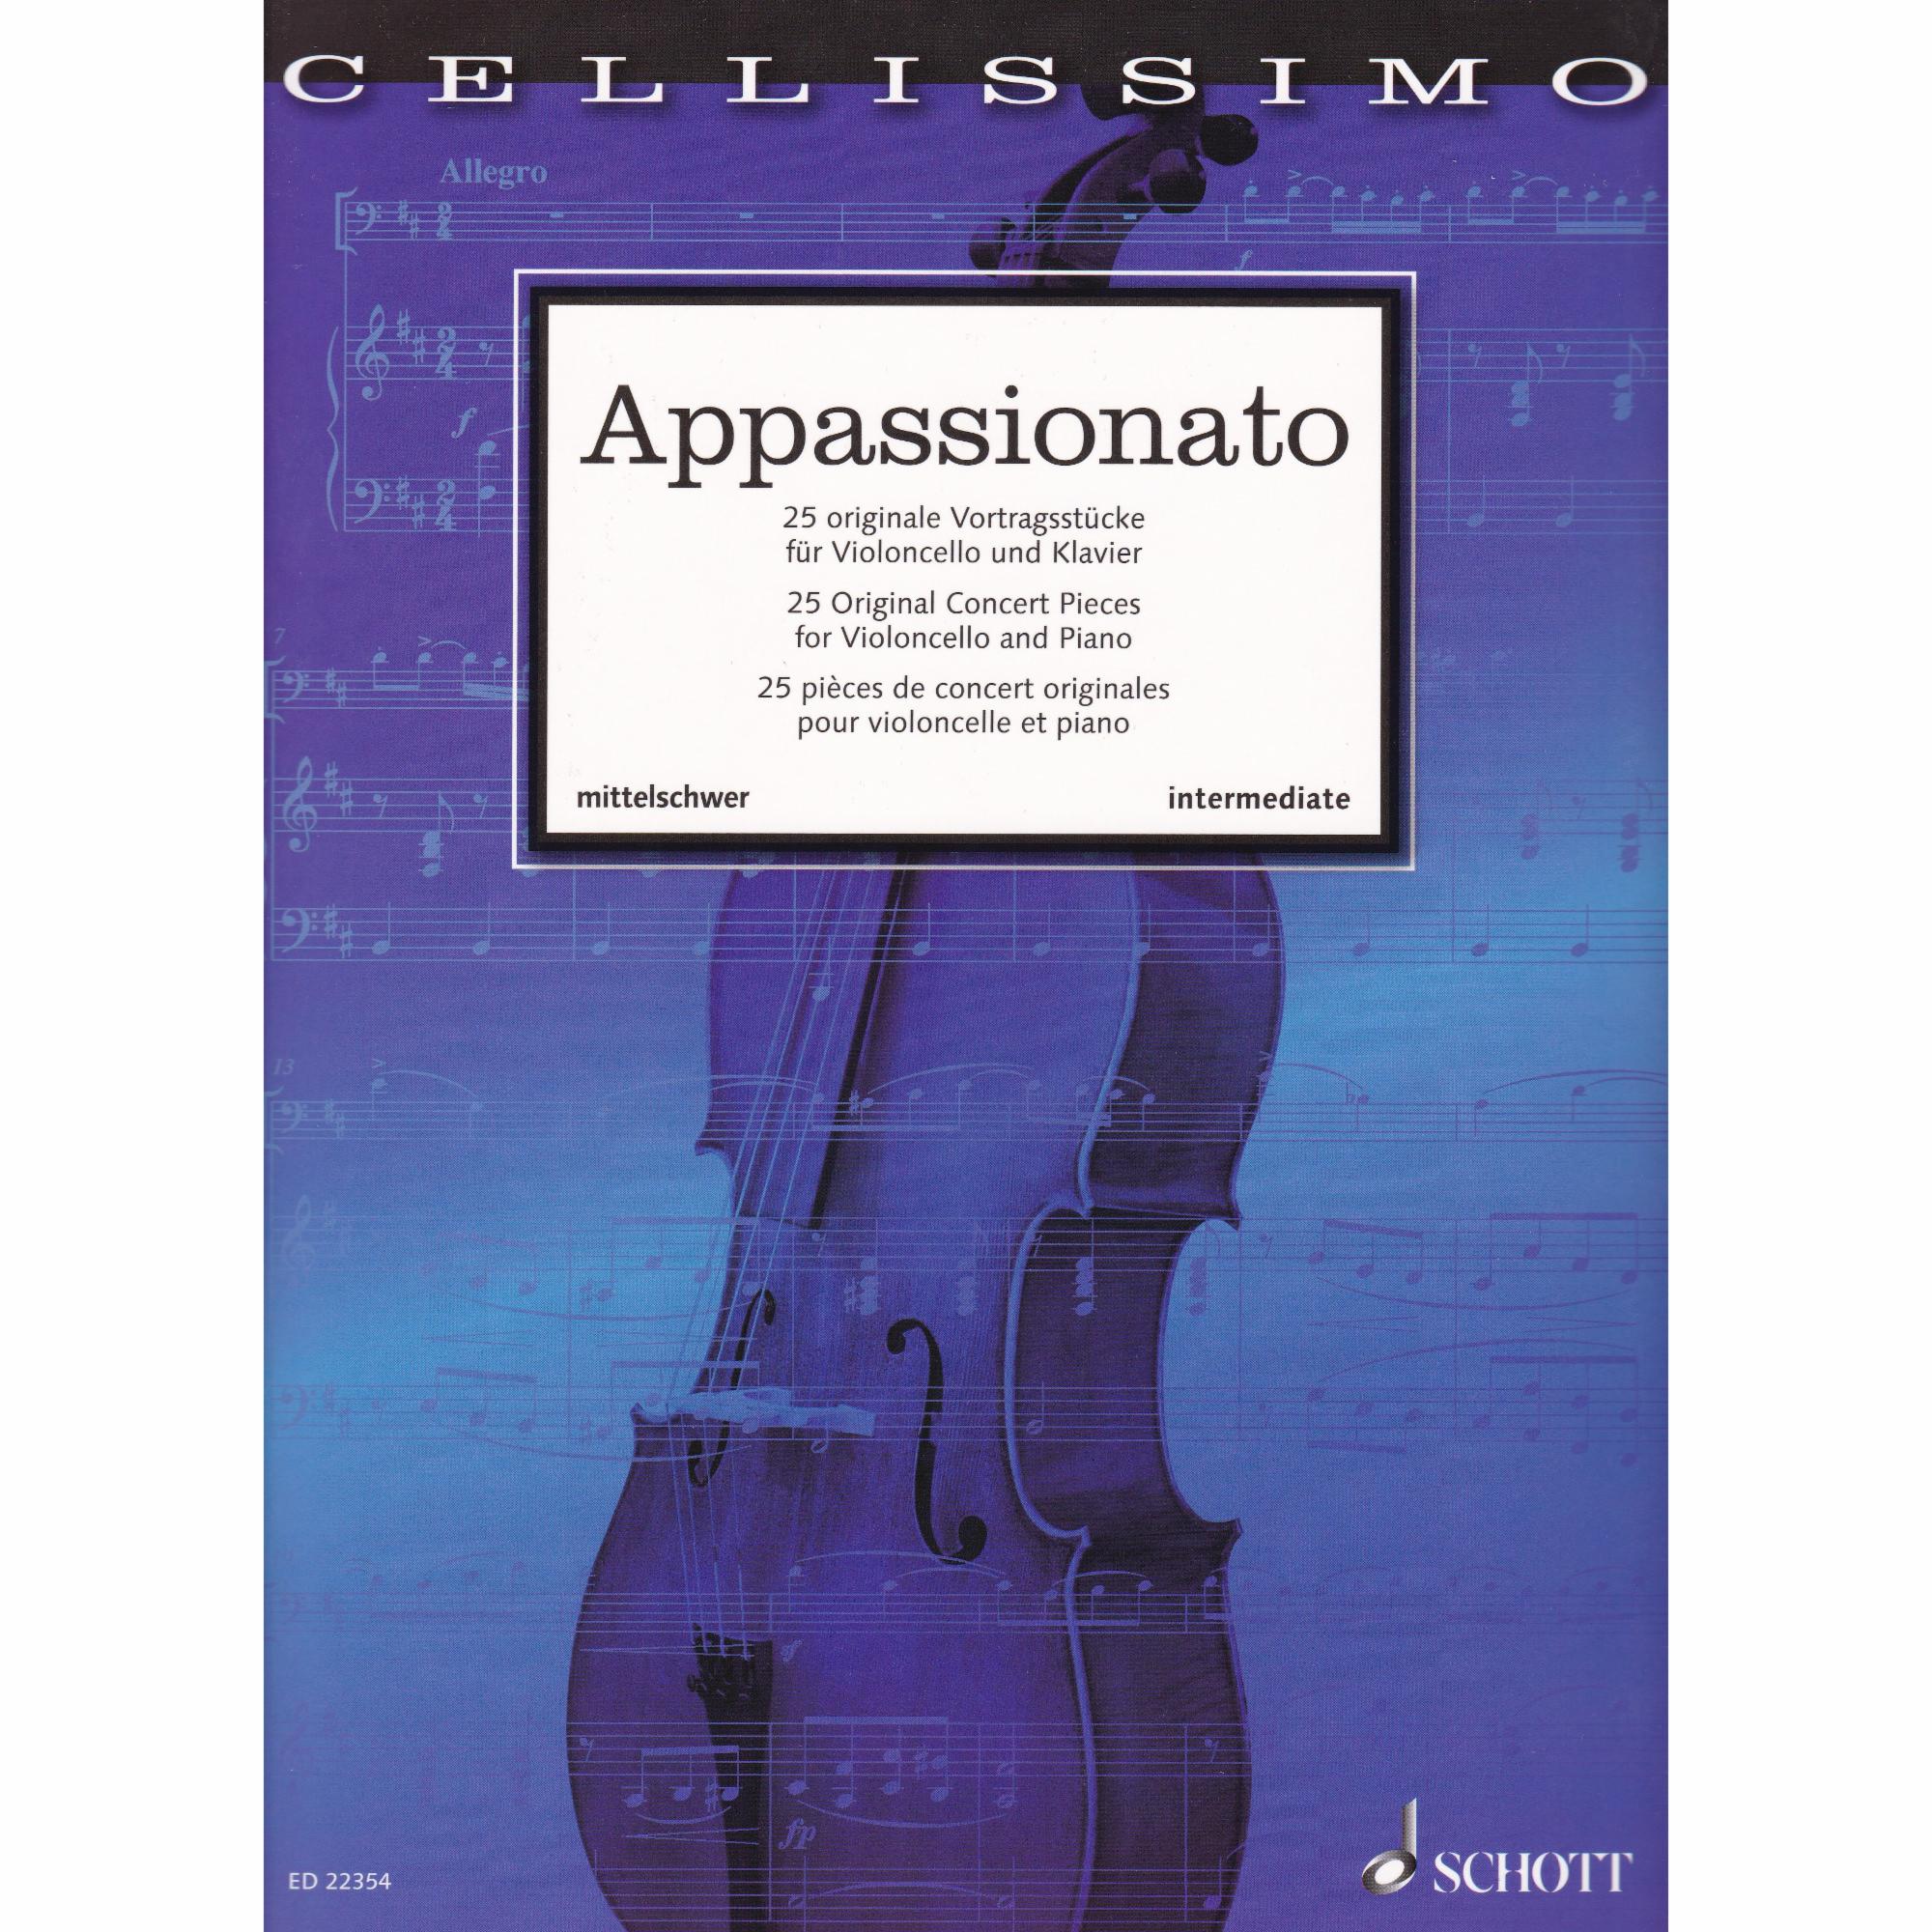 Appassionato: 25 Original Concert Pieces for Cello and Piano